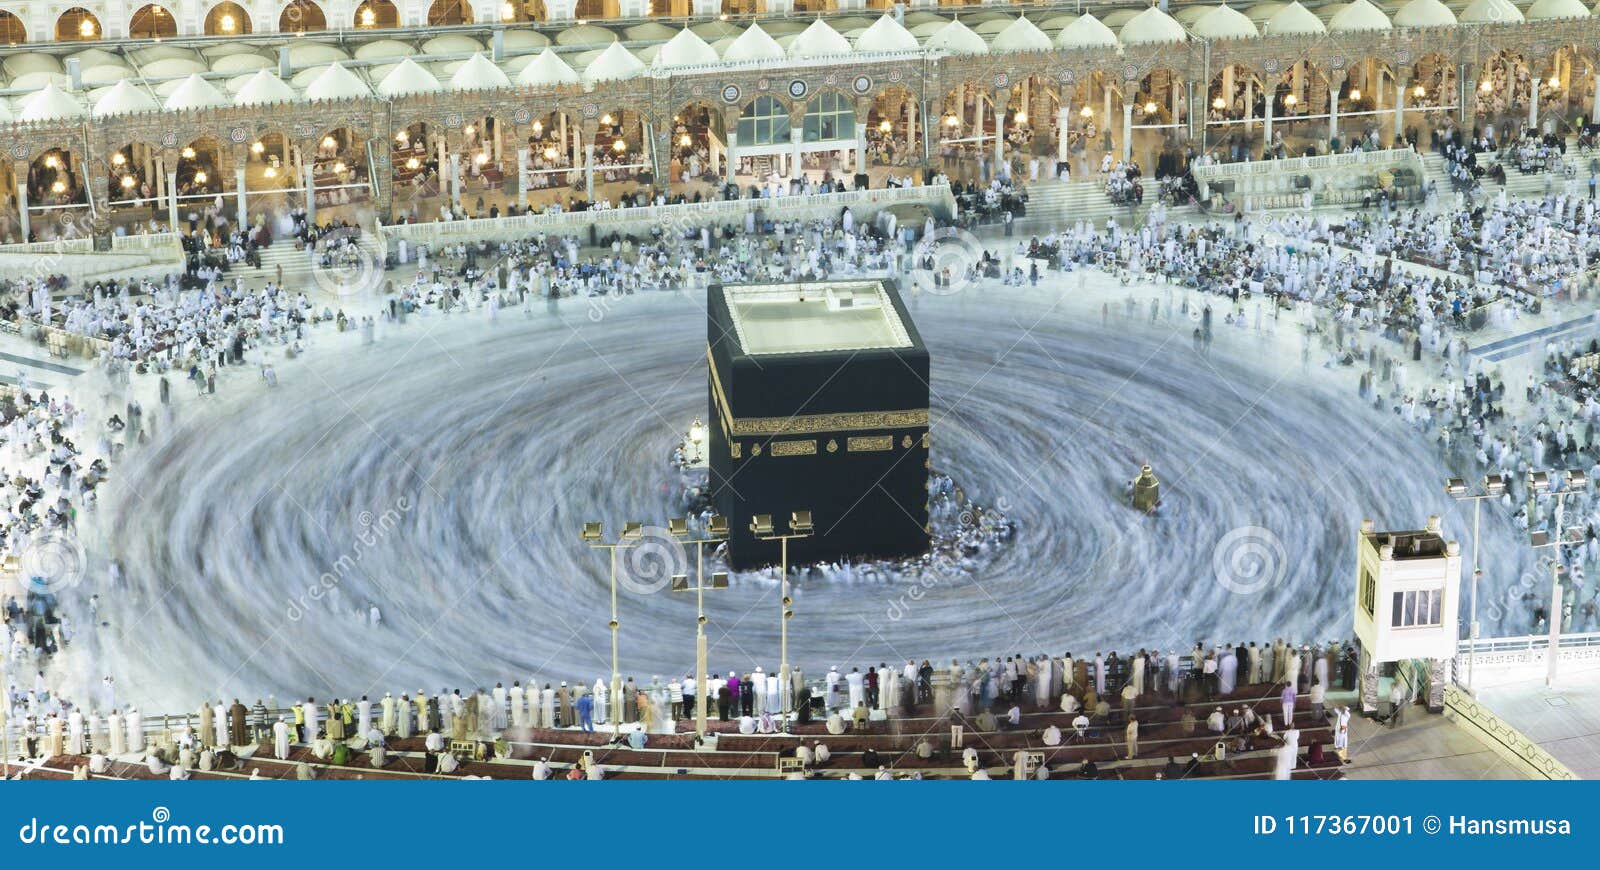 沙特：穆斯林围绕麦加“天房”祈祷 景象壮观-搜狐大视野-搜狐新闻